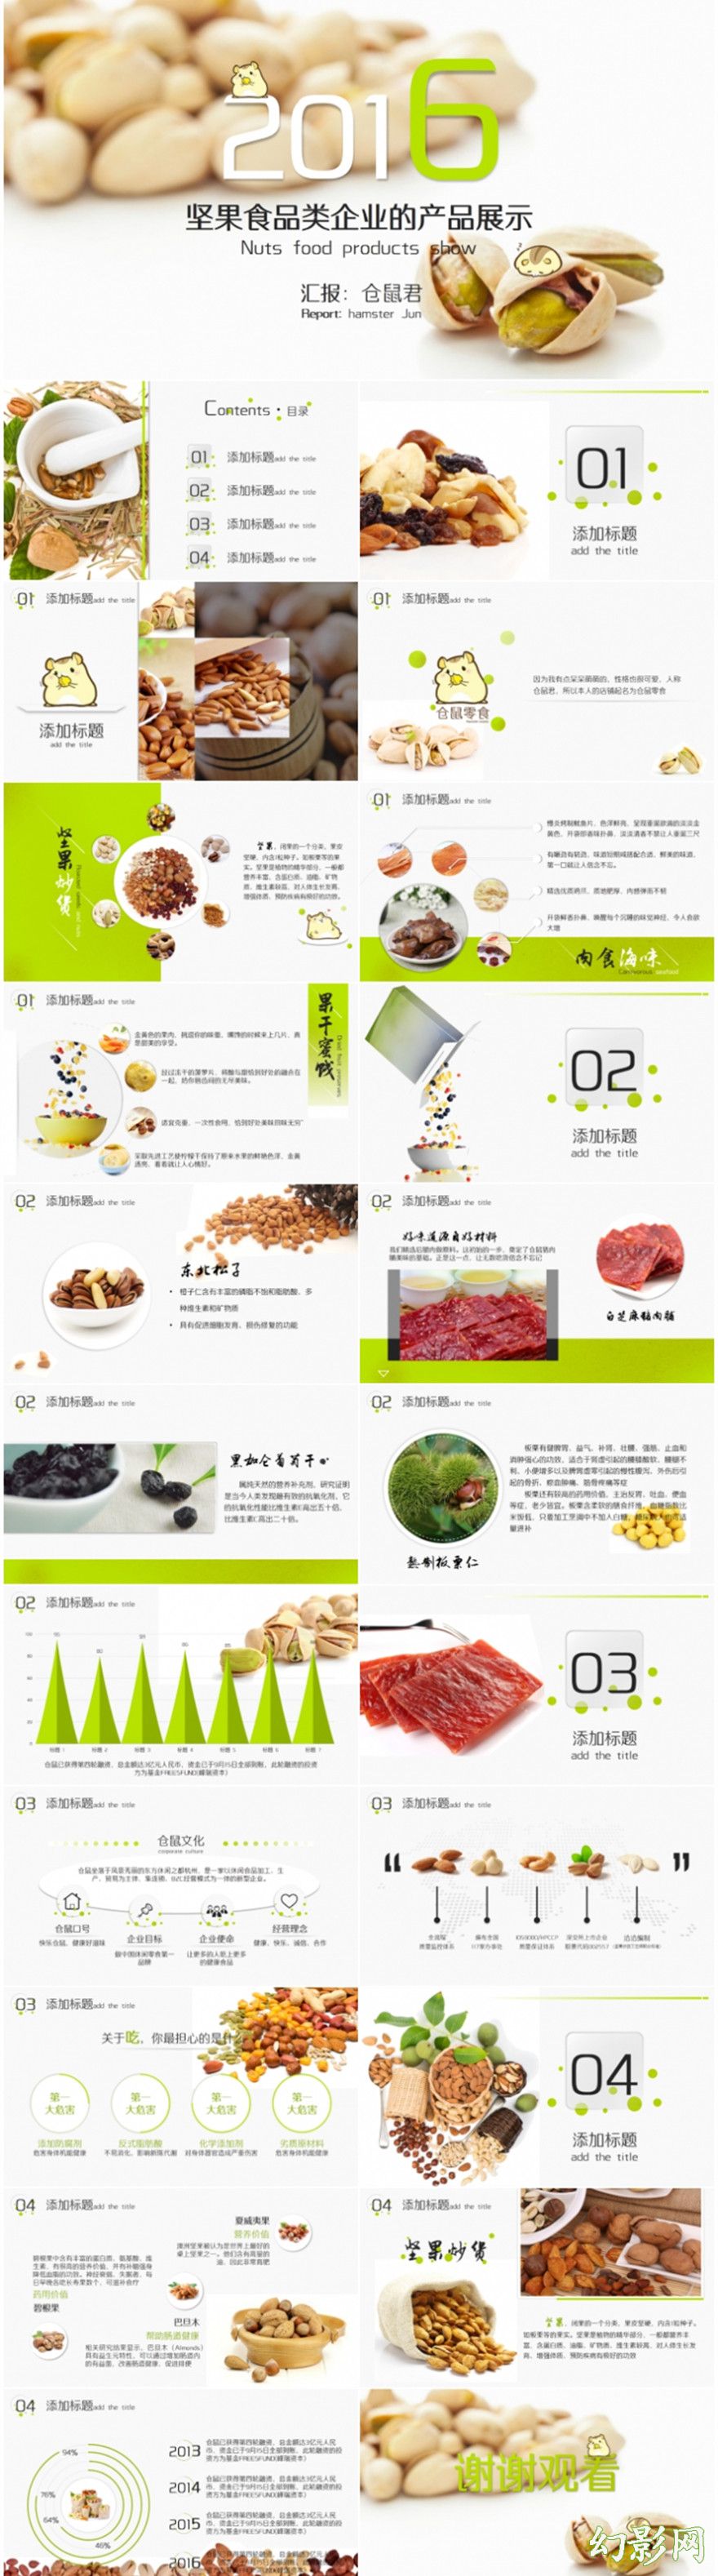 坚果食品类企业的产品展示ppt模板